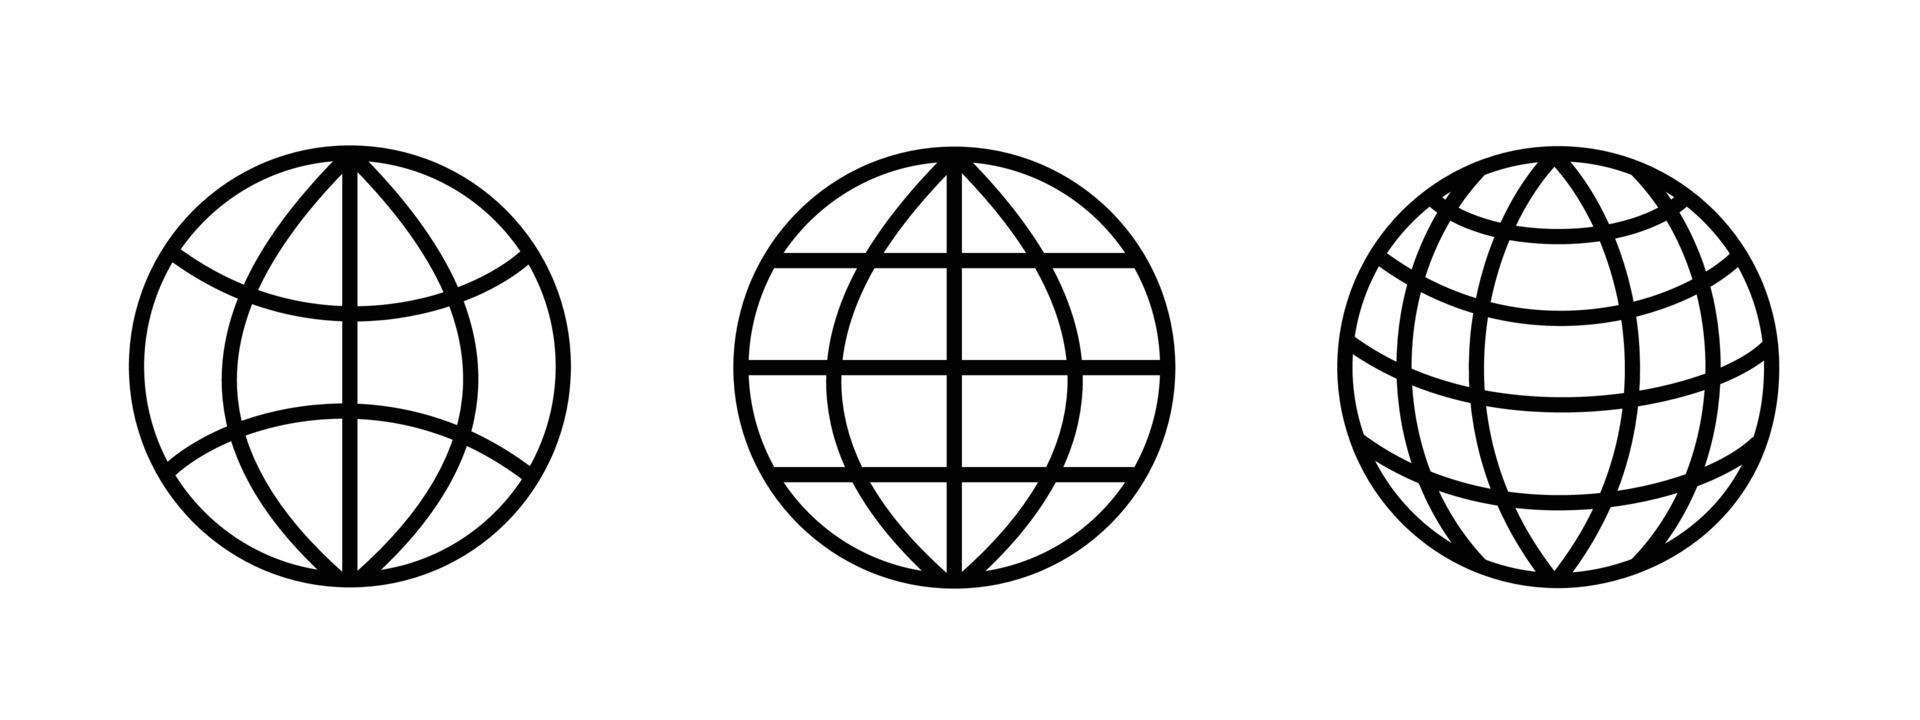 Weltsymbol, Vektorillustration auf weißem Hintergrund vektor